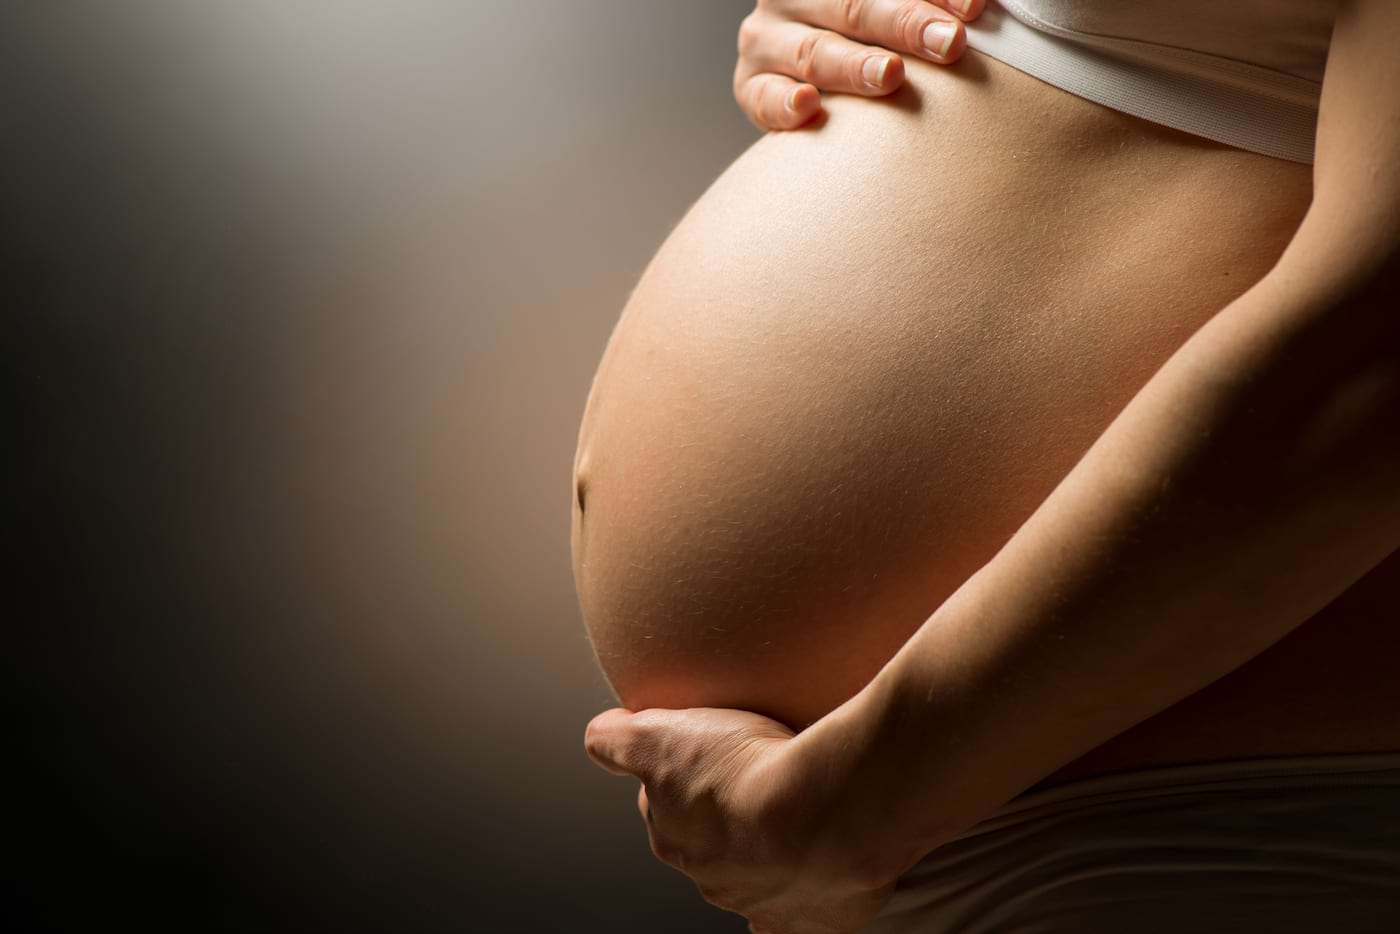 Ce trebuie să ştii despre varice pe perioada sarcinii - Chirurgie Dr. Marius Fodor